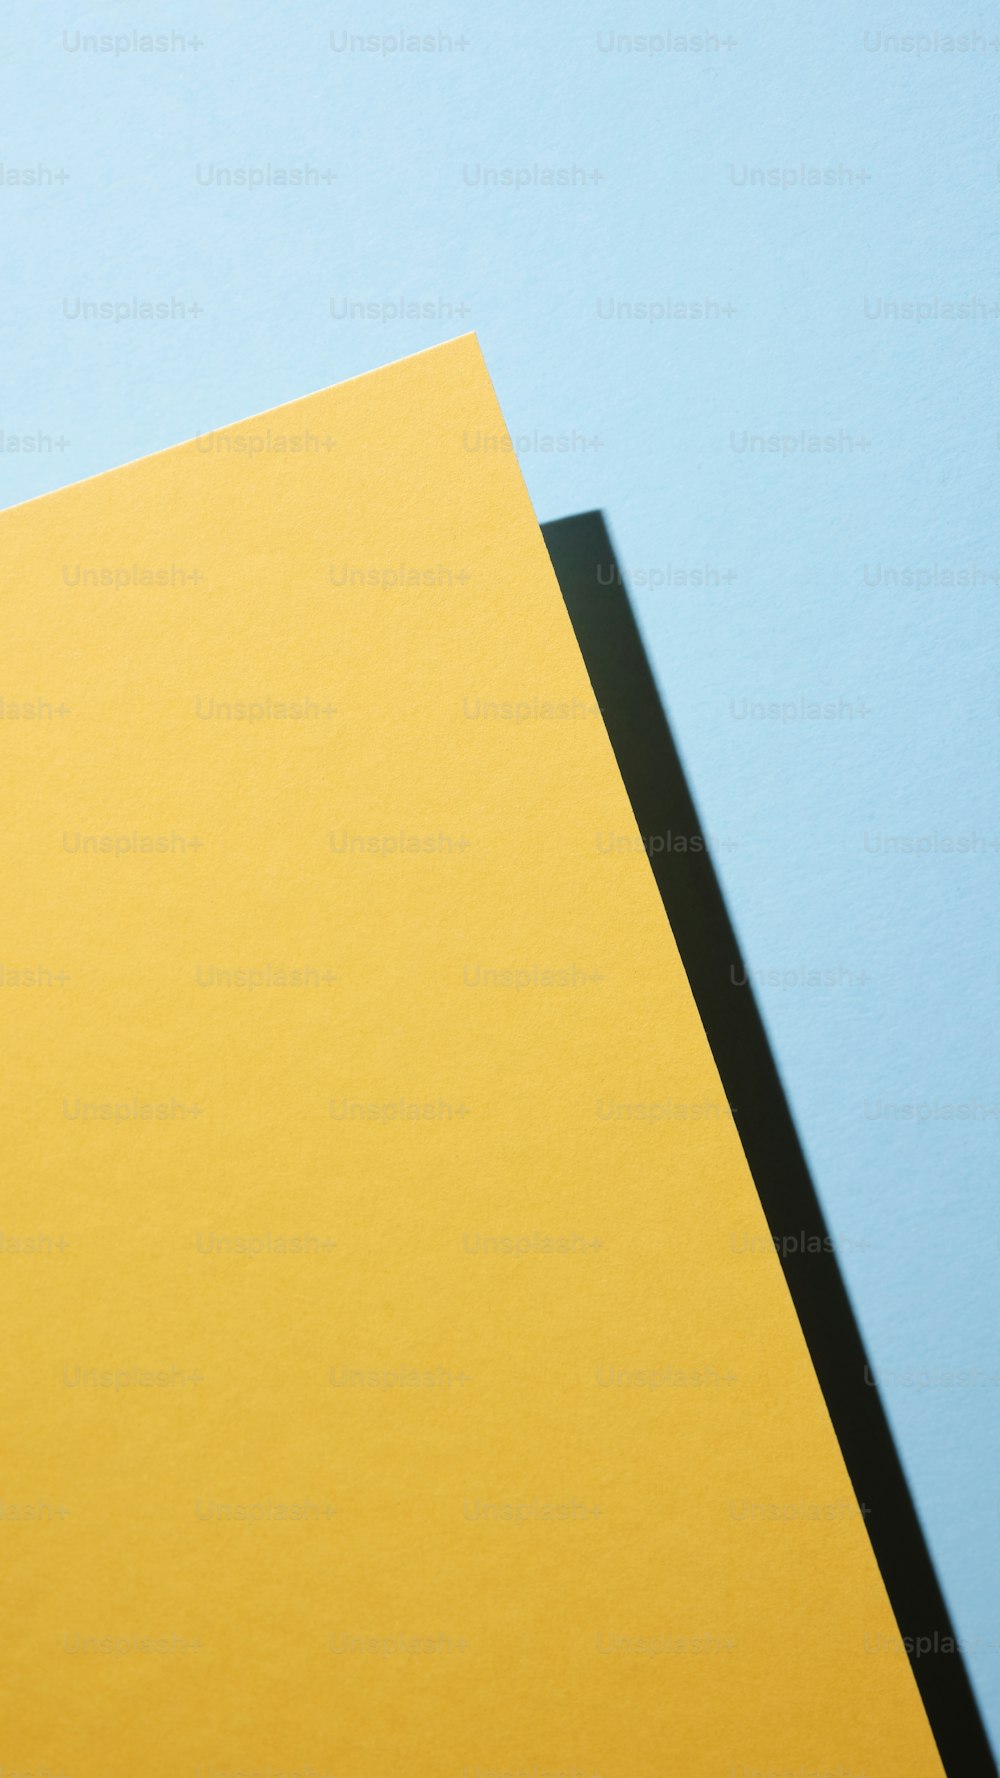 un morceau de papier jaune sur fond bleu